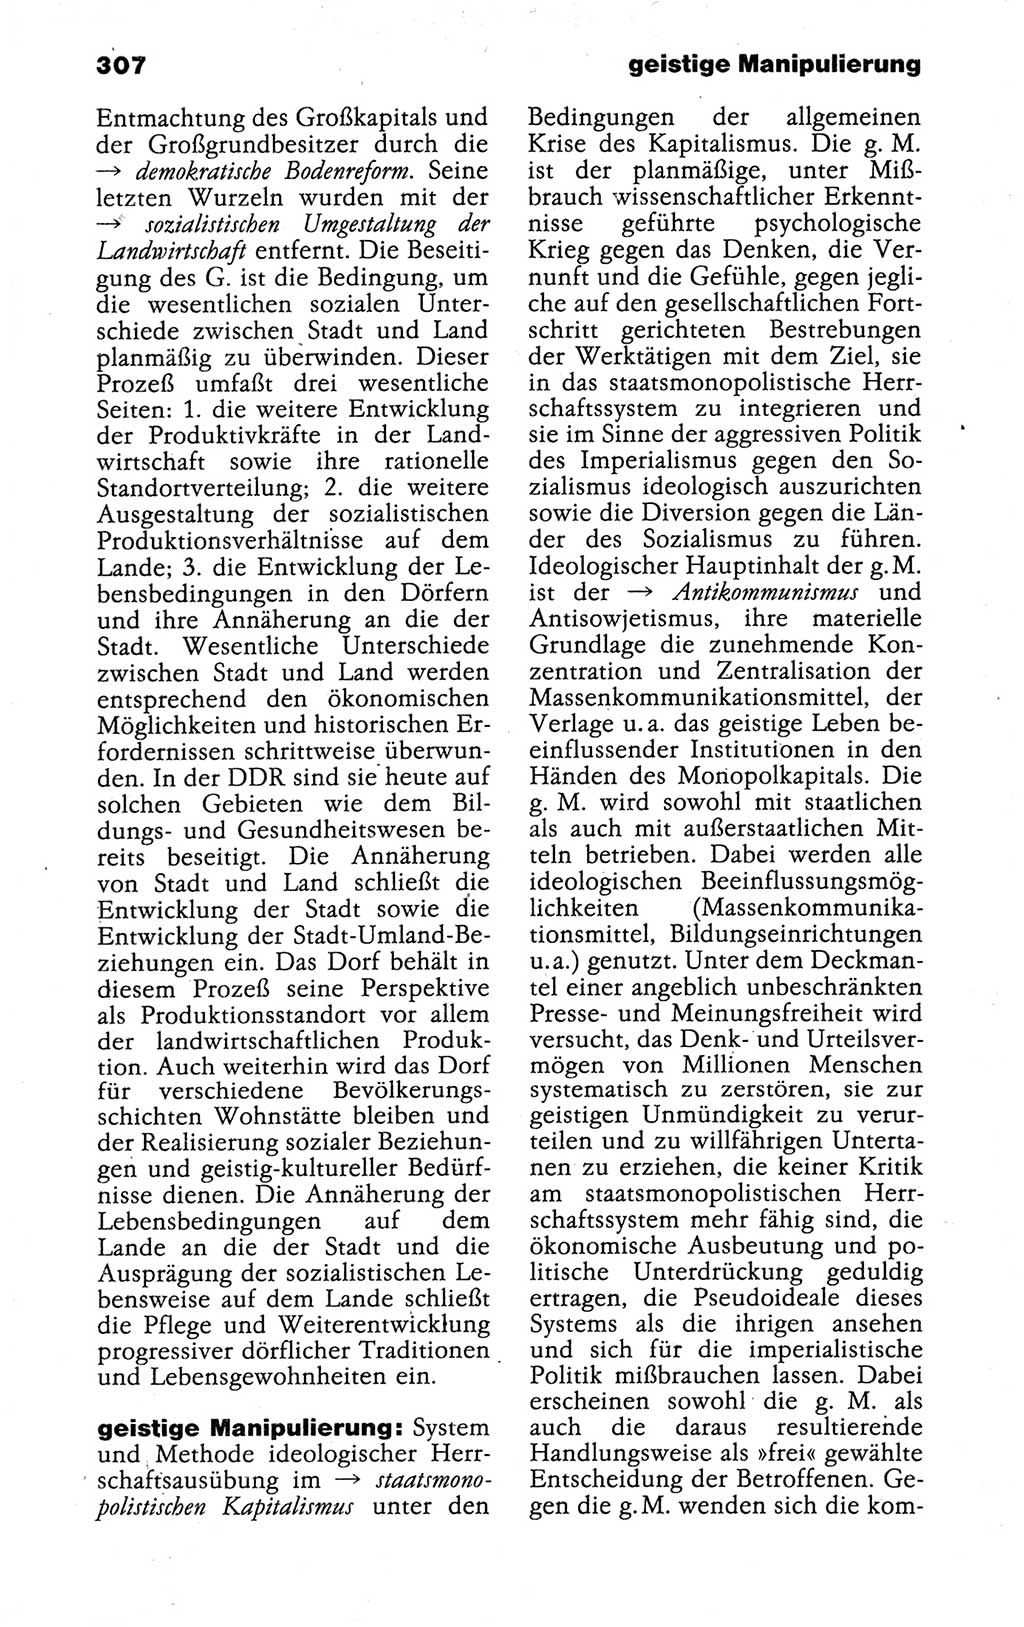 Kleines politisches Wörterbuch [Deutsche Demokratische Republik (DDR)] 1988, Seite 307 (Kl. pol. Wb. DDR 1988, S. 307)